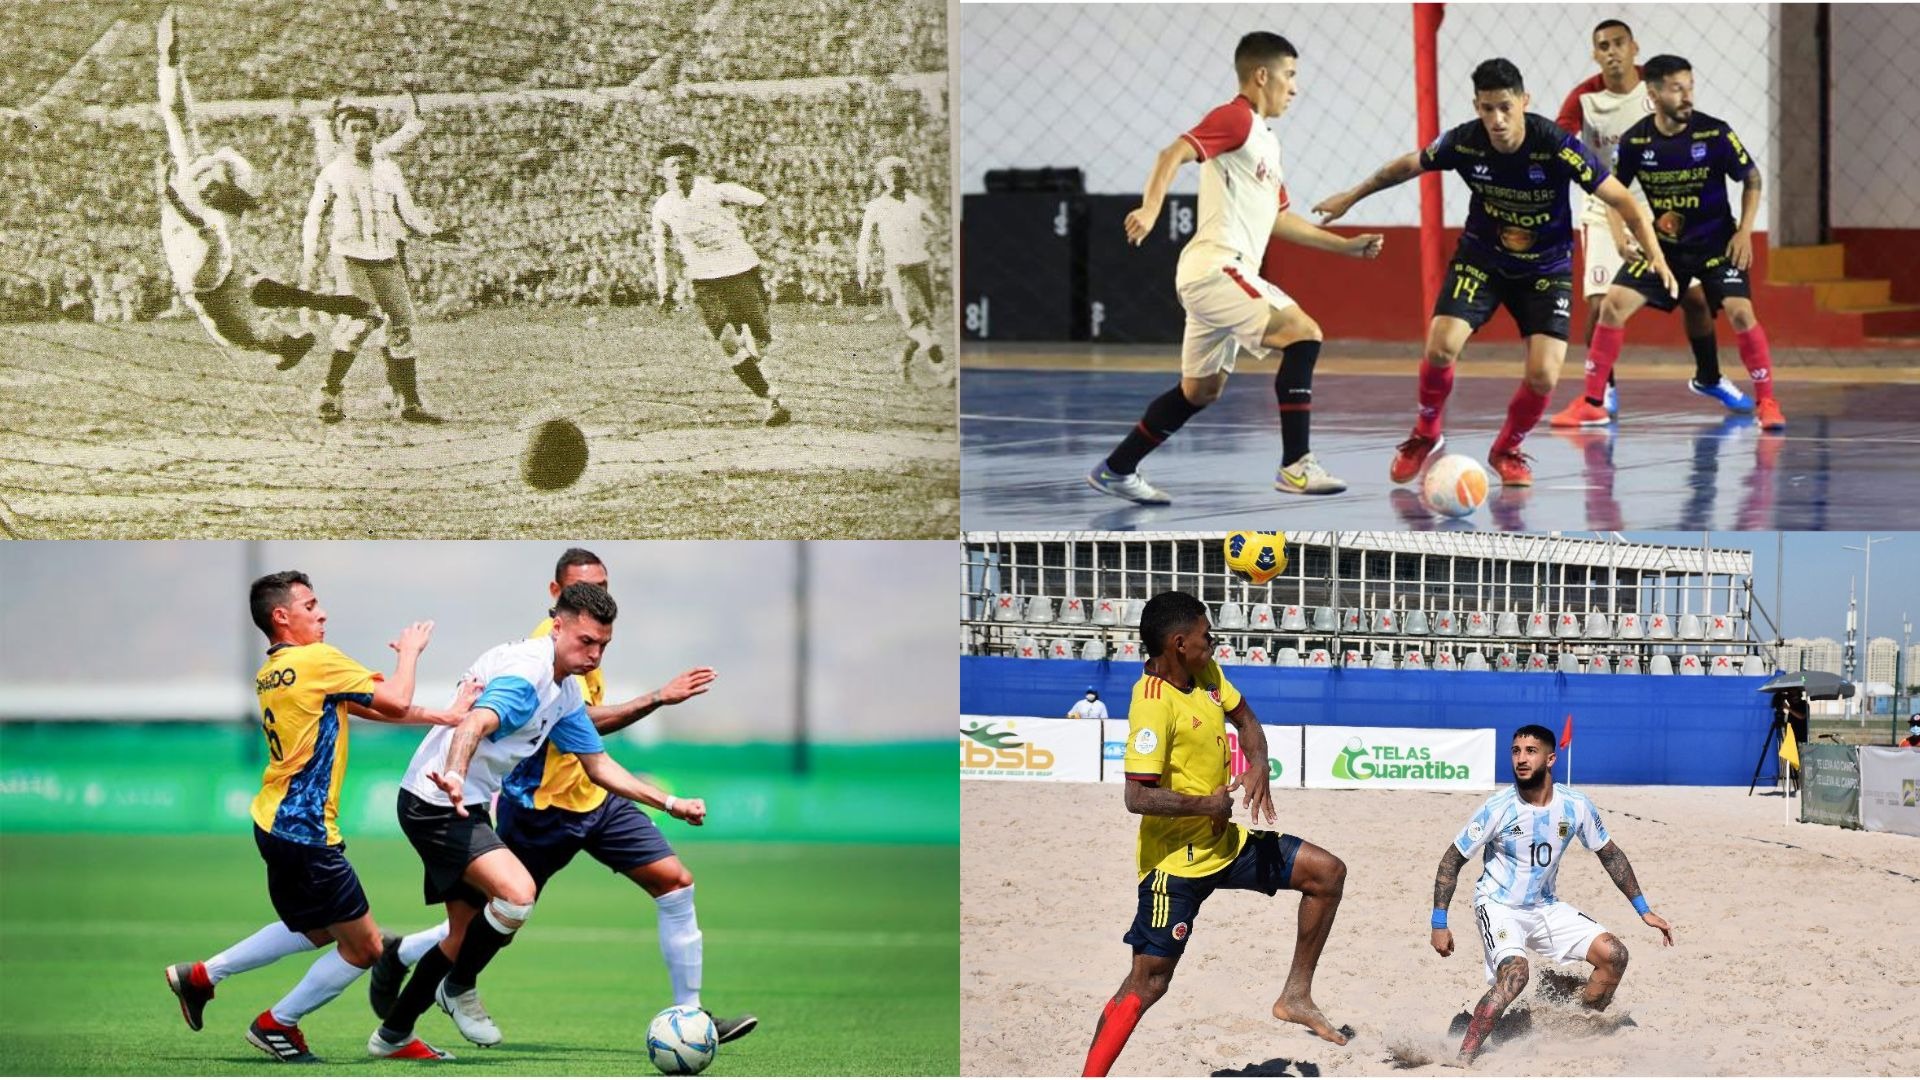 El fútbol desde su creación generó que tenga diversas variantes / Foto: FIFA - Panamericanos